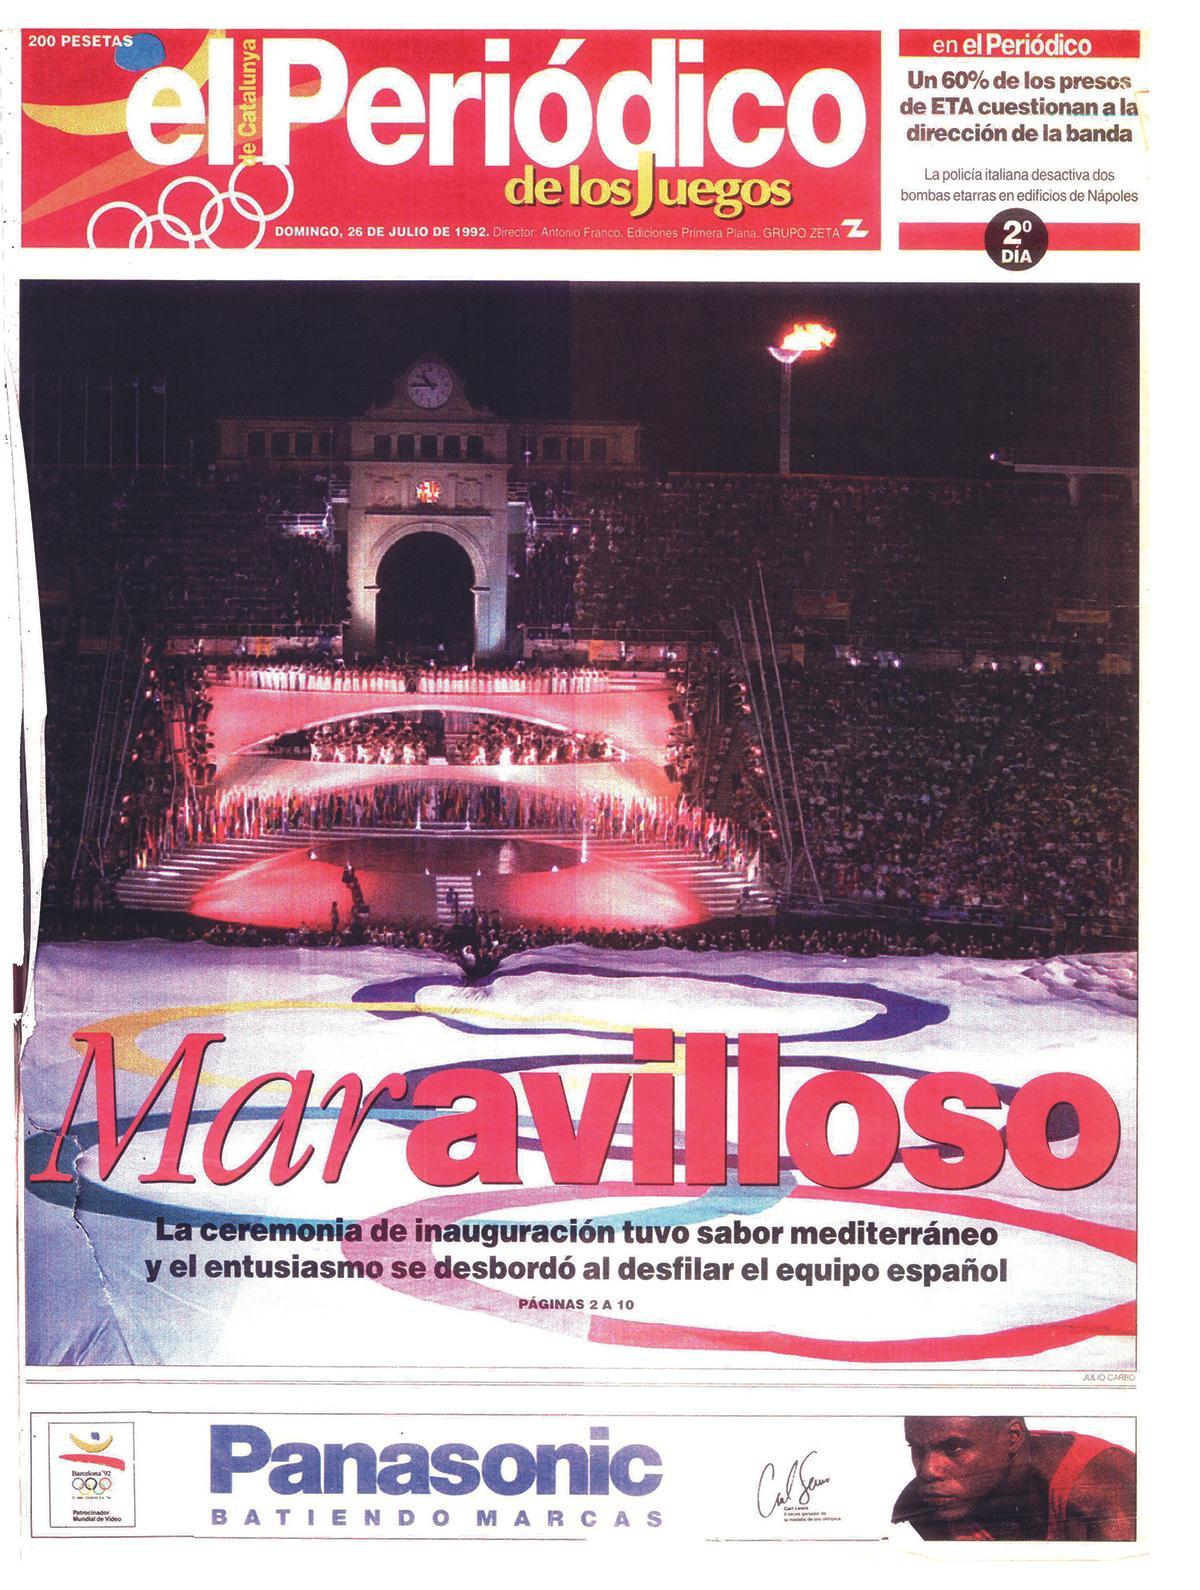 La portada de EL PERIÓDICO del domingo 26 de julio de 1992, donde se daba cuenta de la ceremonia de inauguración de los Juegos Olímpicos de Barcelona.